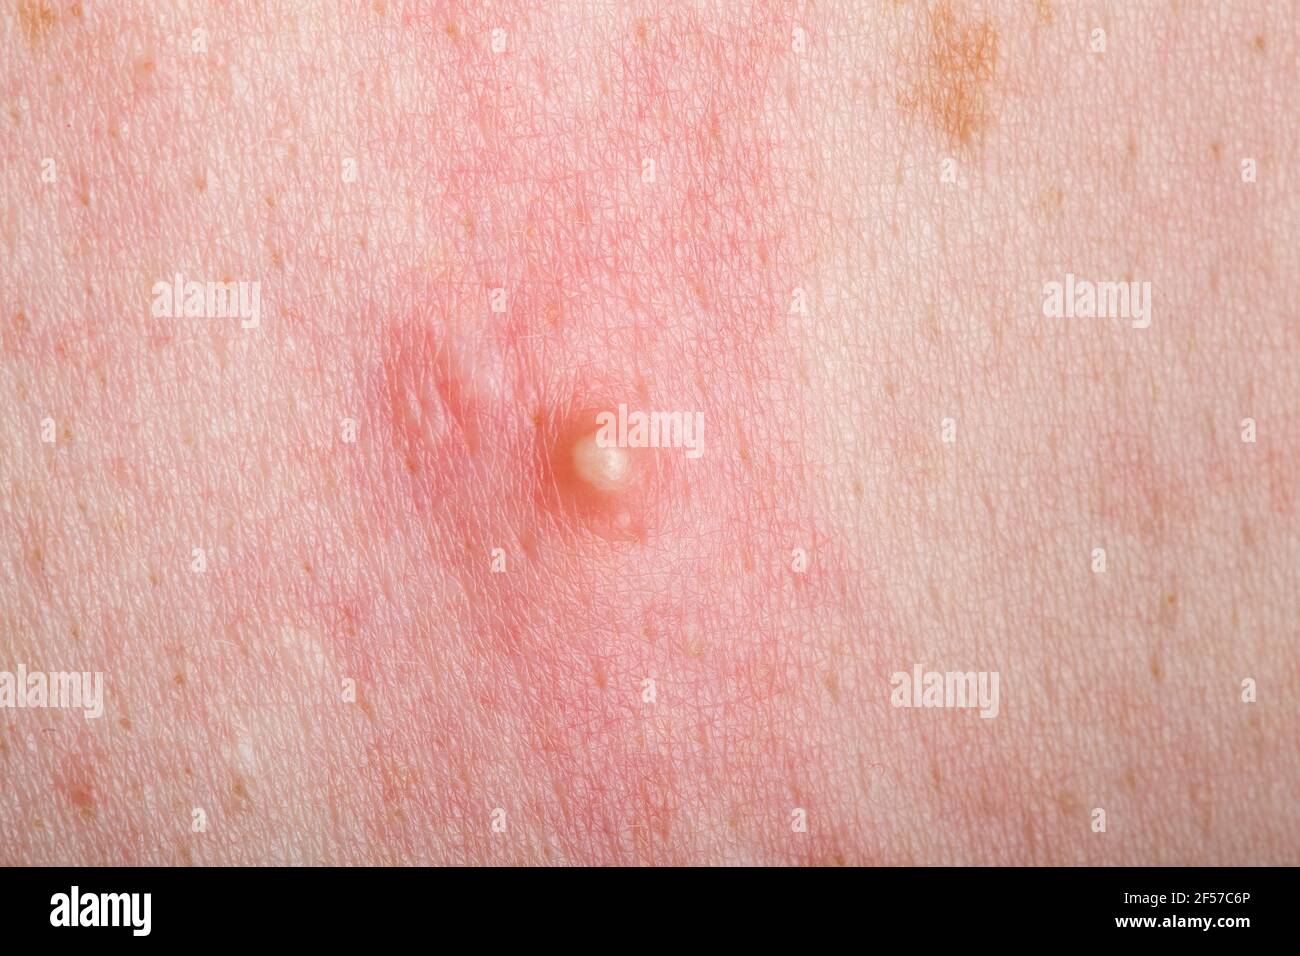 Der reife Pickel auf der entzündeten geröteten Haut des Menschen aus der  Nähe, Problem der trockenen Haut mit dem entzündlichen Ausschlag  Stockfotografie - Alamy